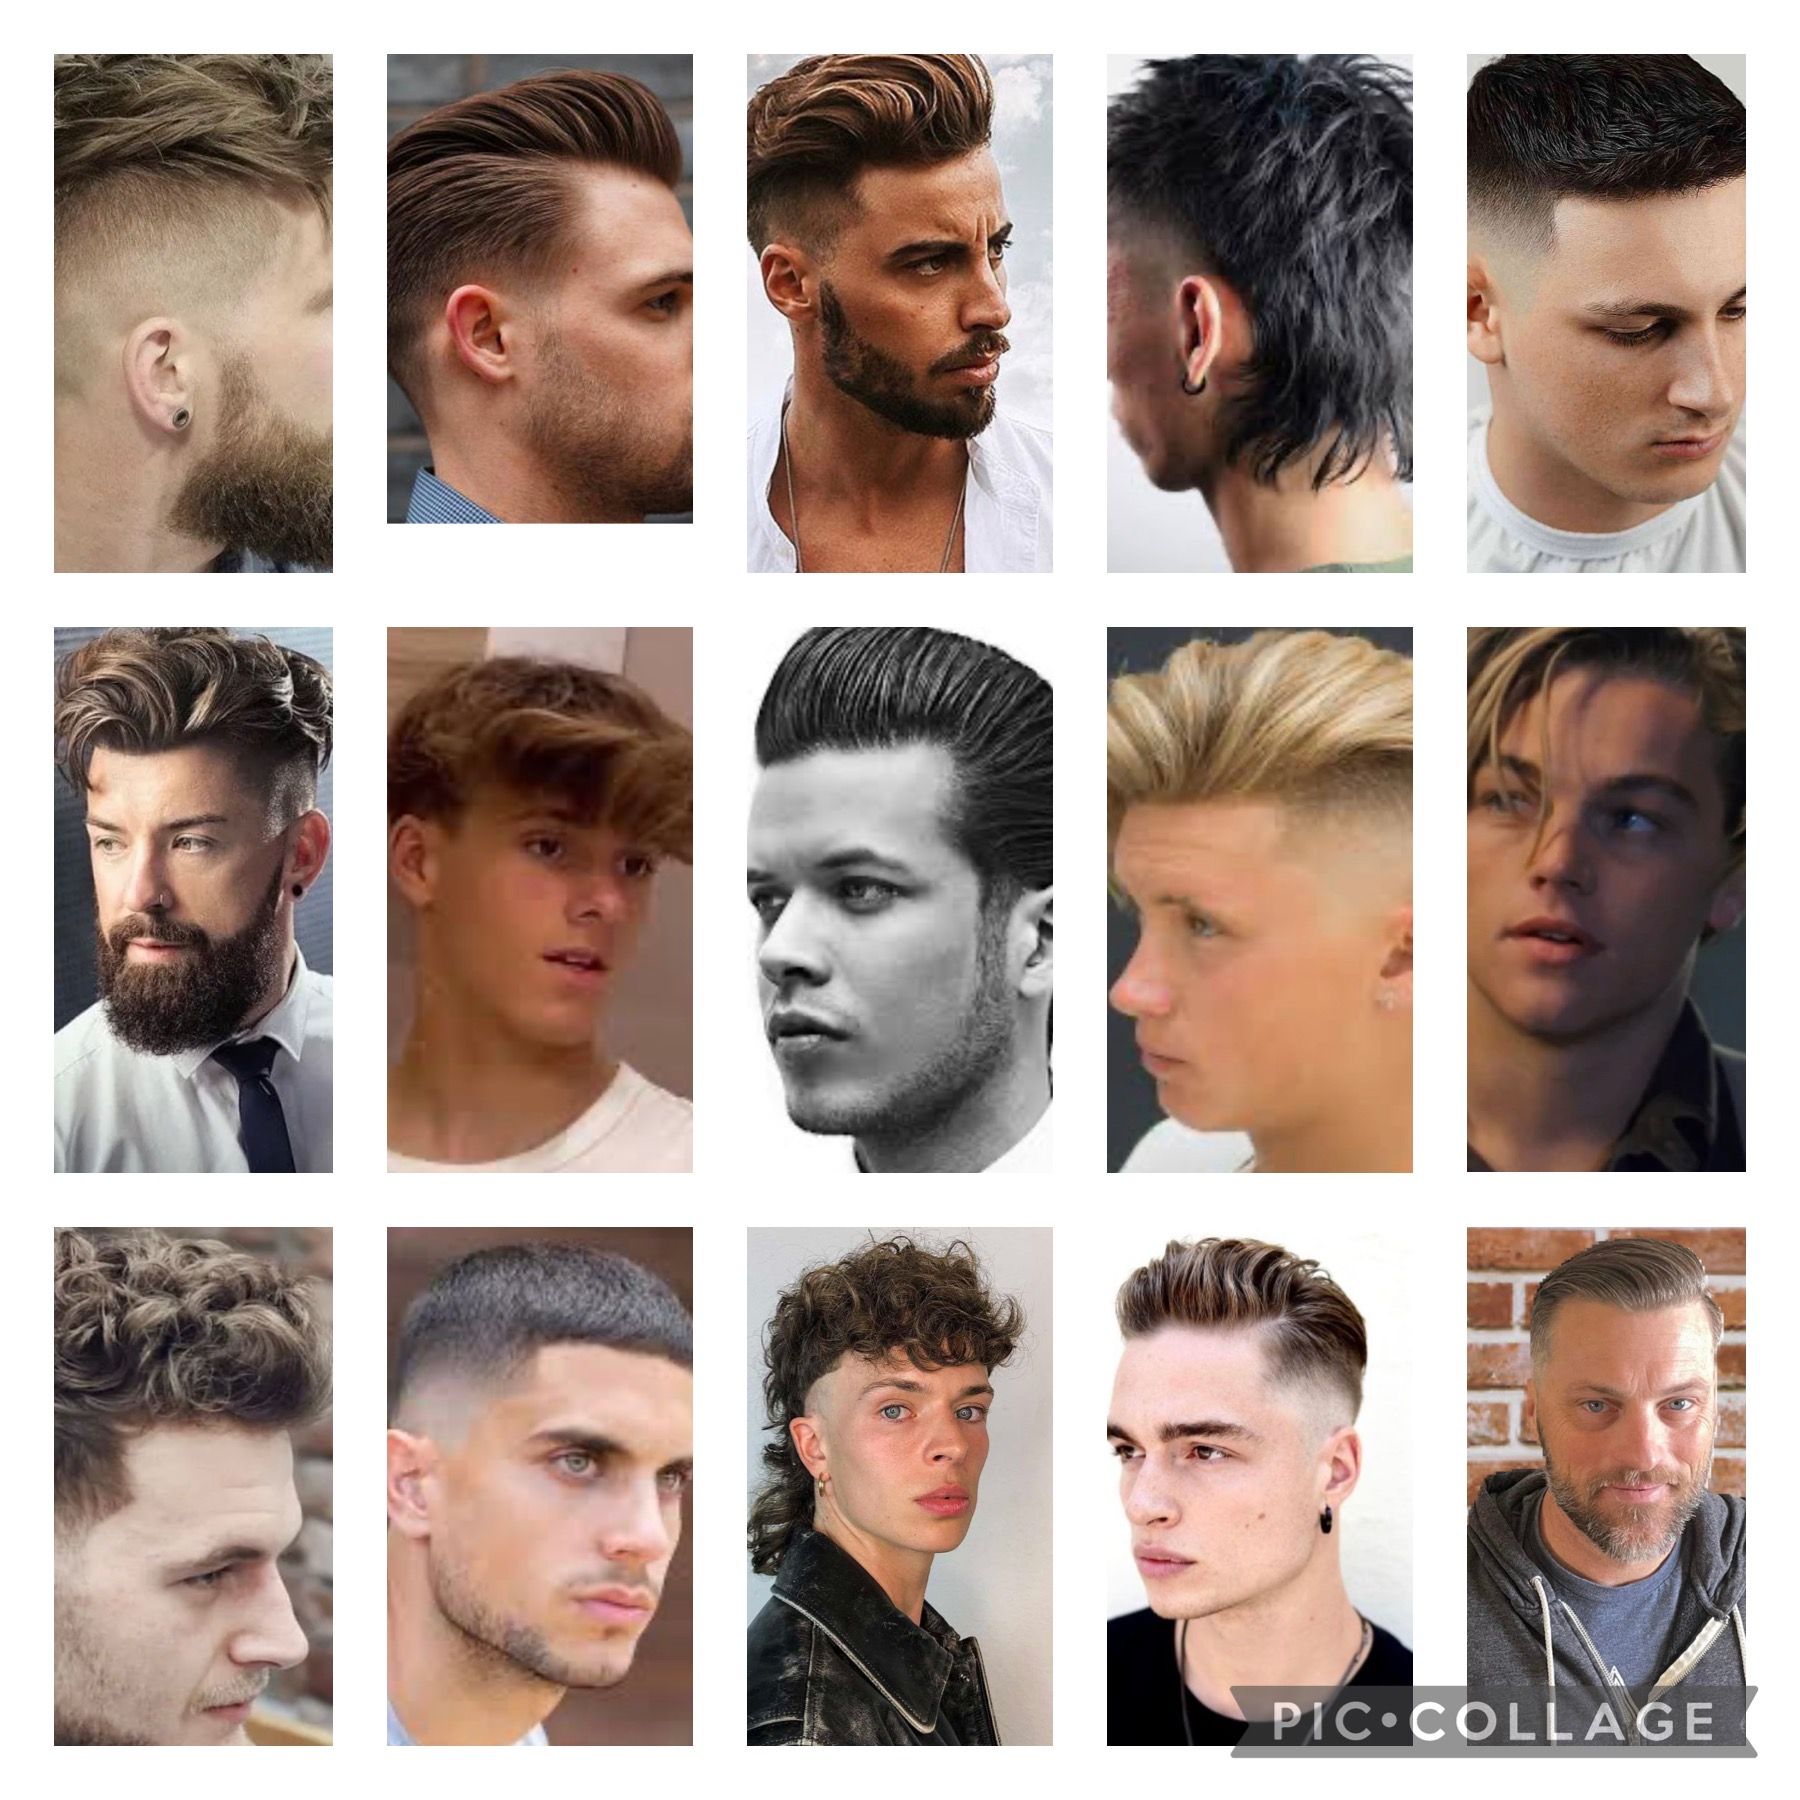 h1>Mens Haircut</h1>